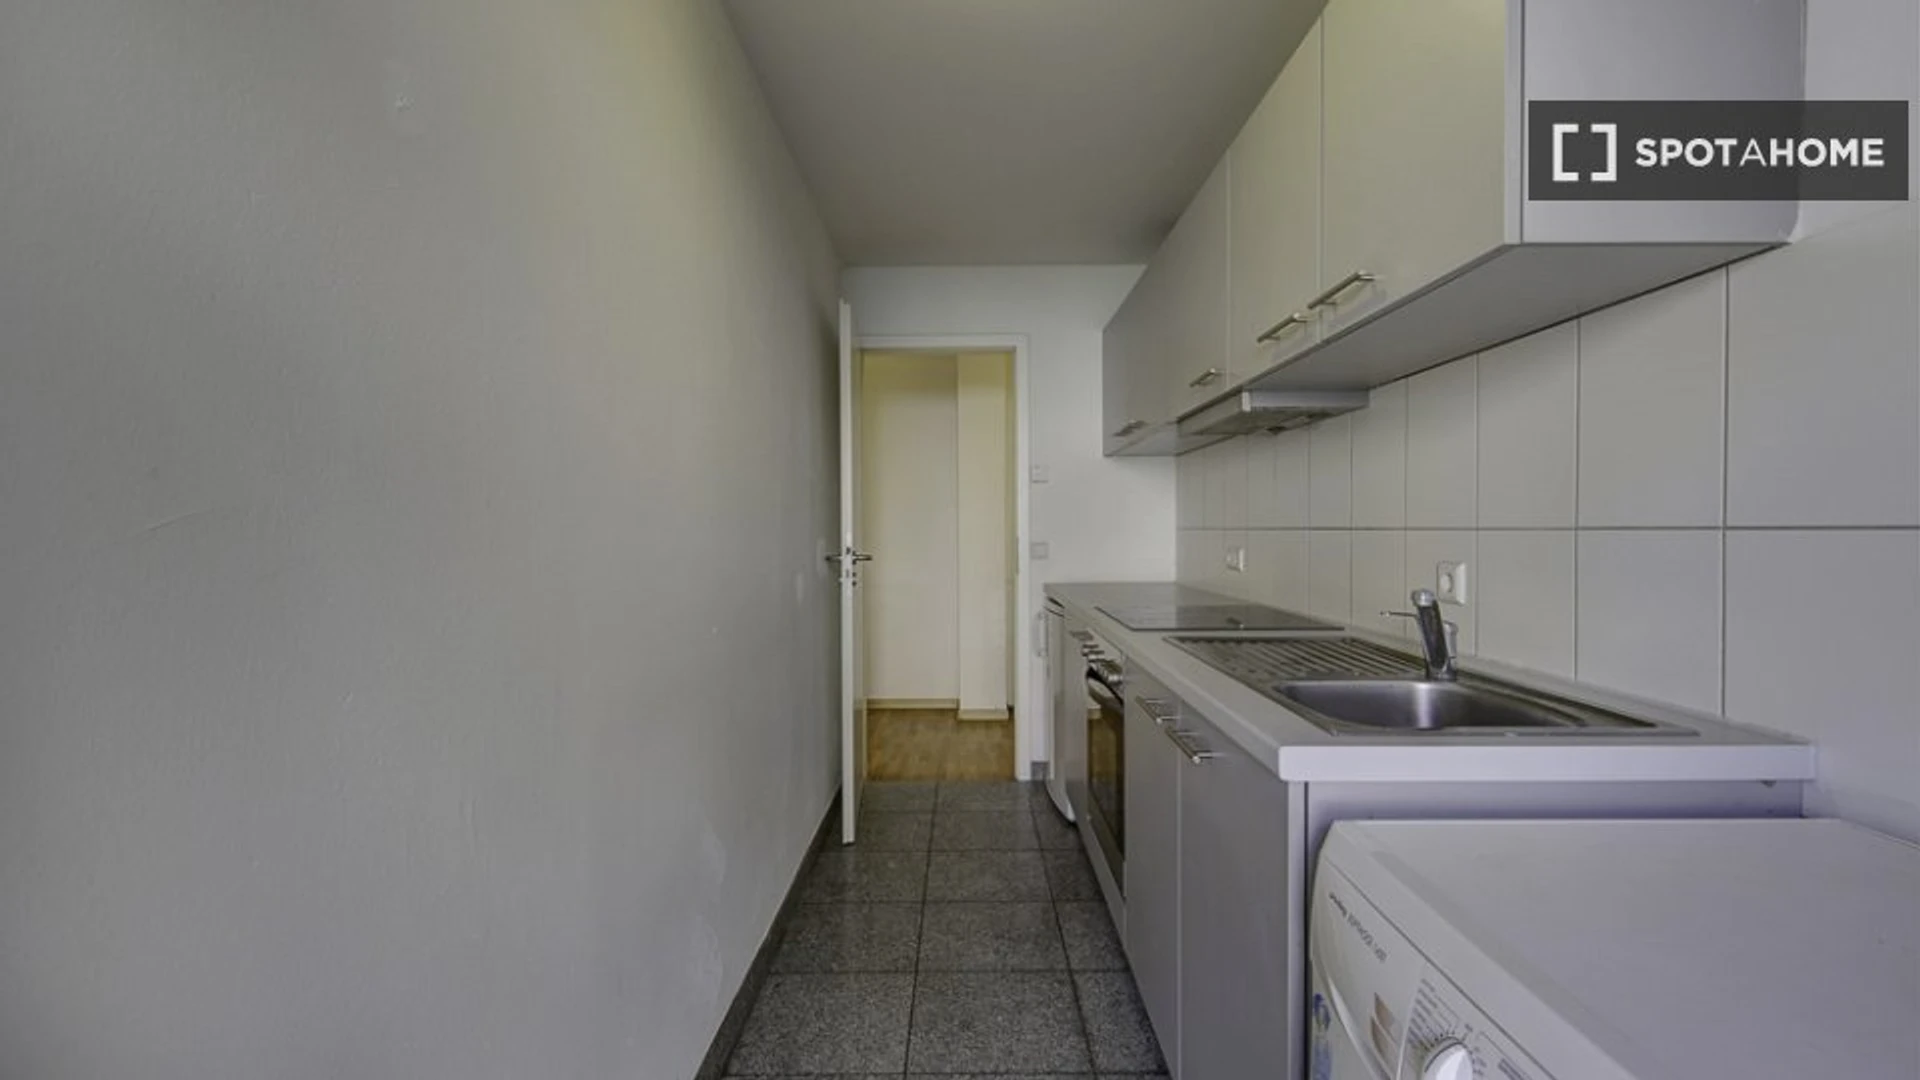 Quarto para alugar num apartamento partilhado em Estugarda